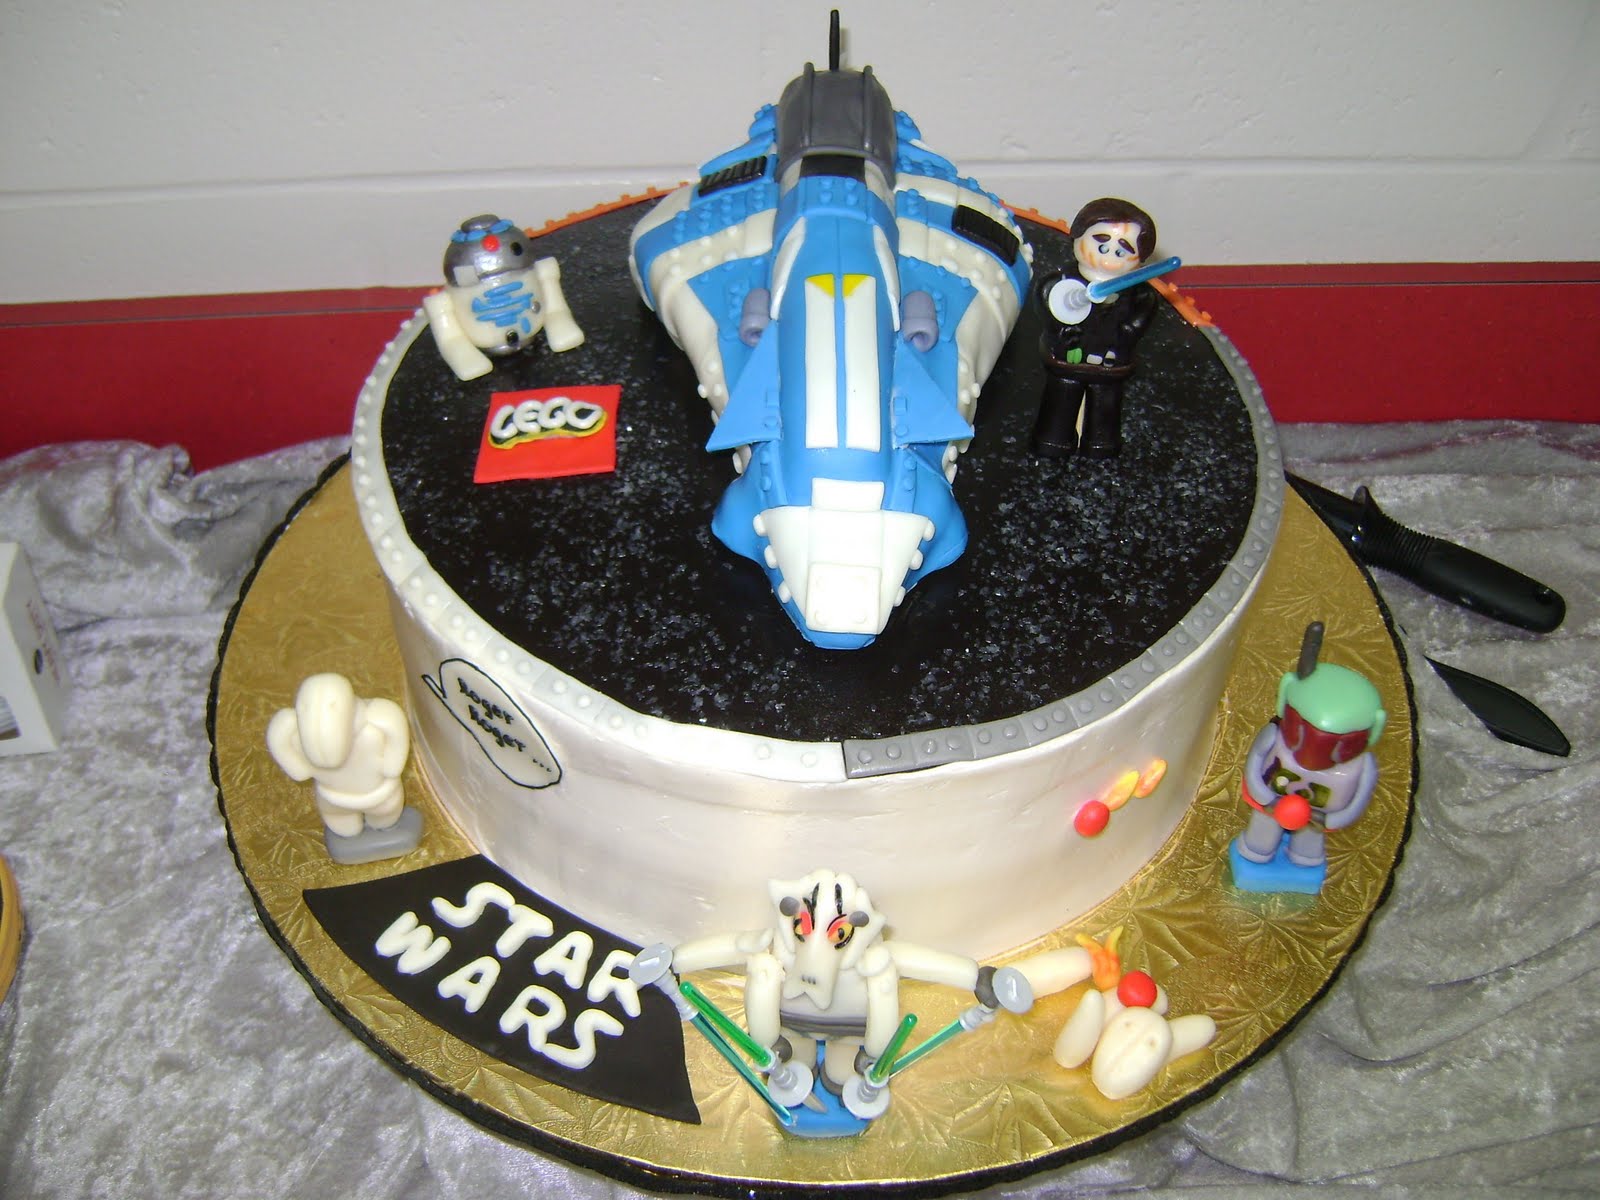 Achieving Baker's Bliss: Lego Star Wars Birthday Cake